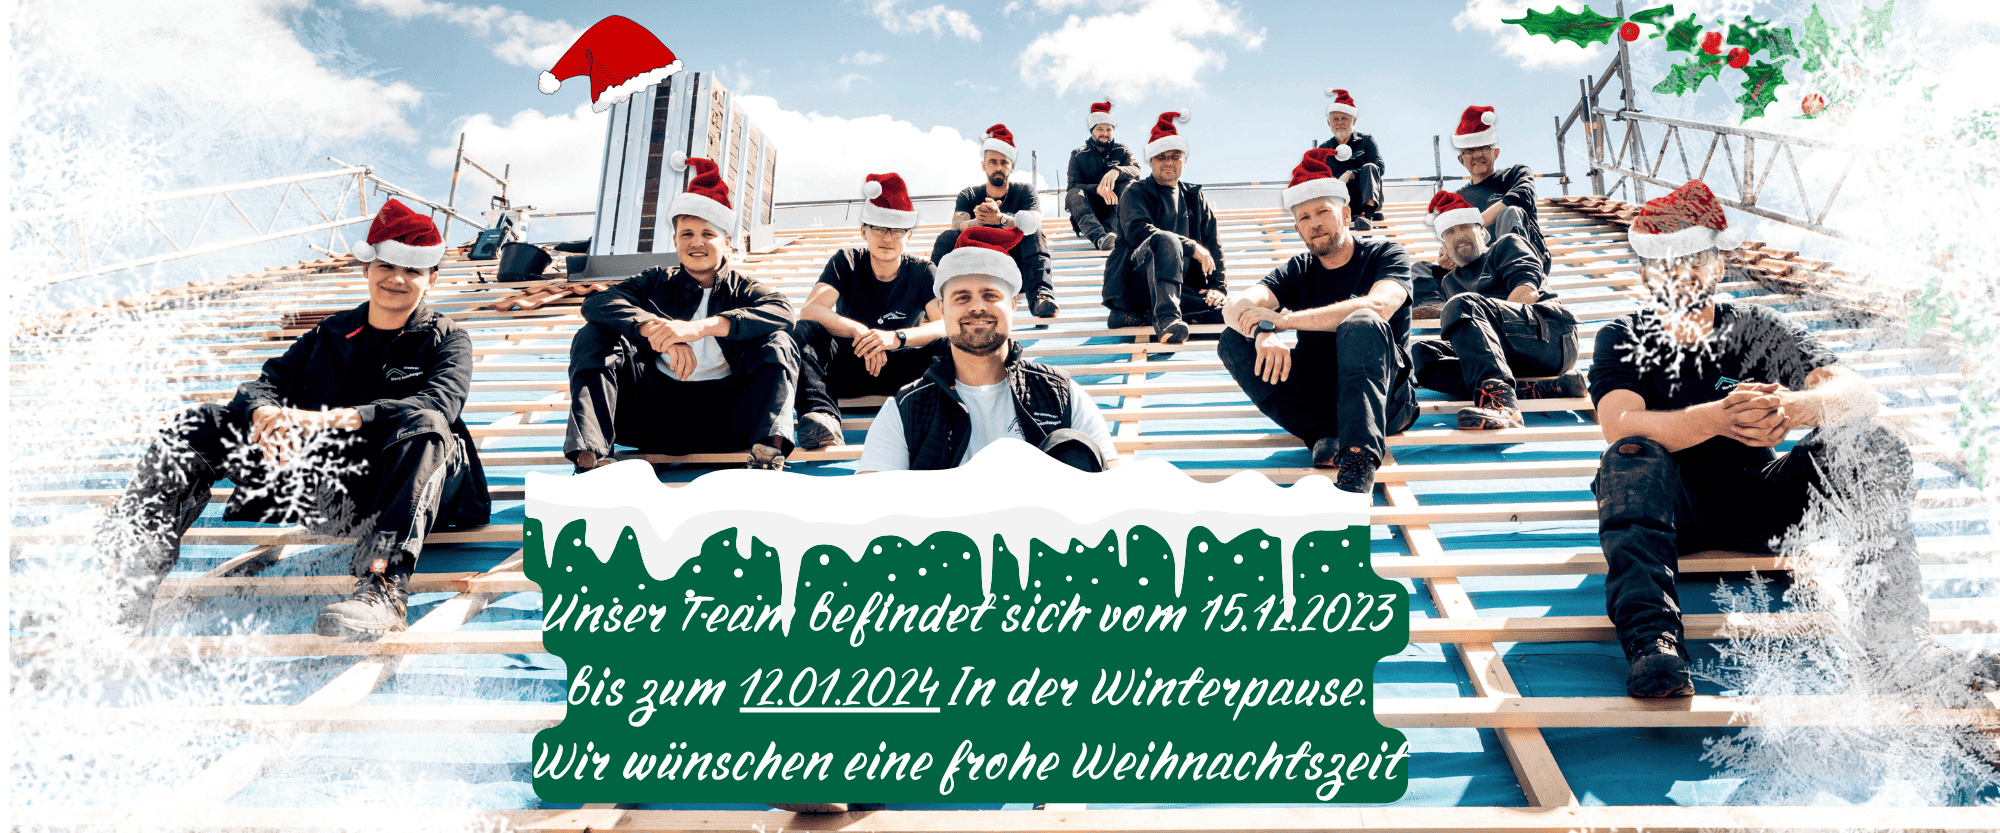 Dachdecker die Frohe Weihnachten wünschen in Freising in Bayern bei München. Inkl. Zimmerei